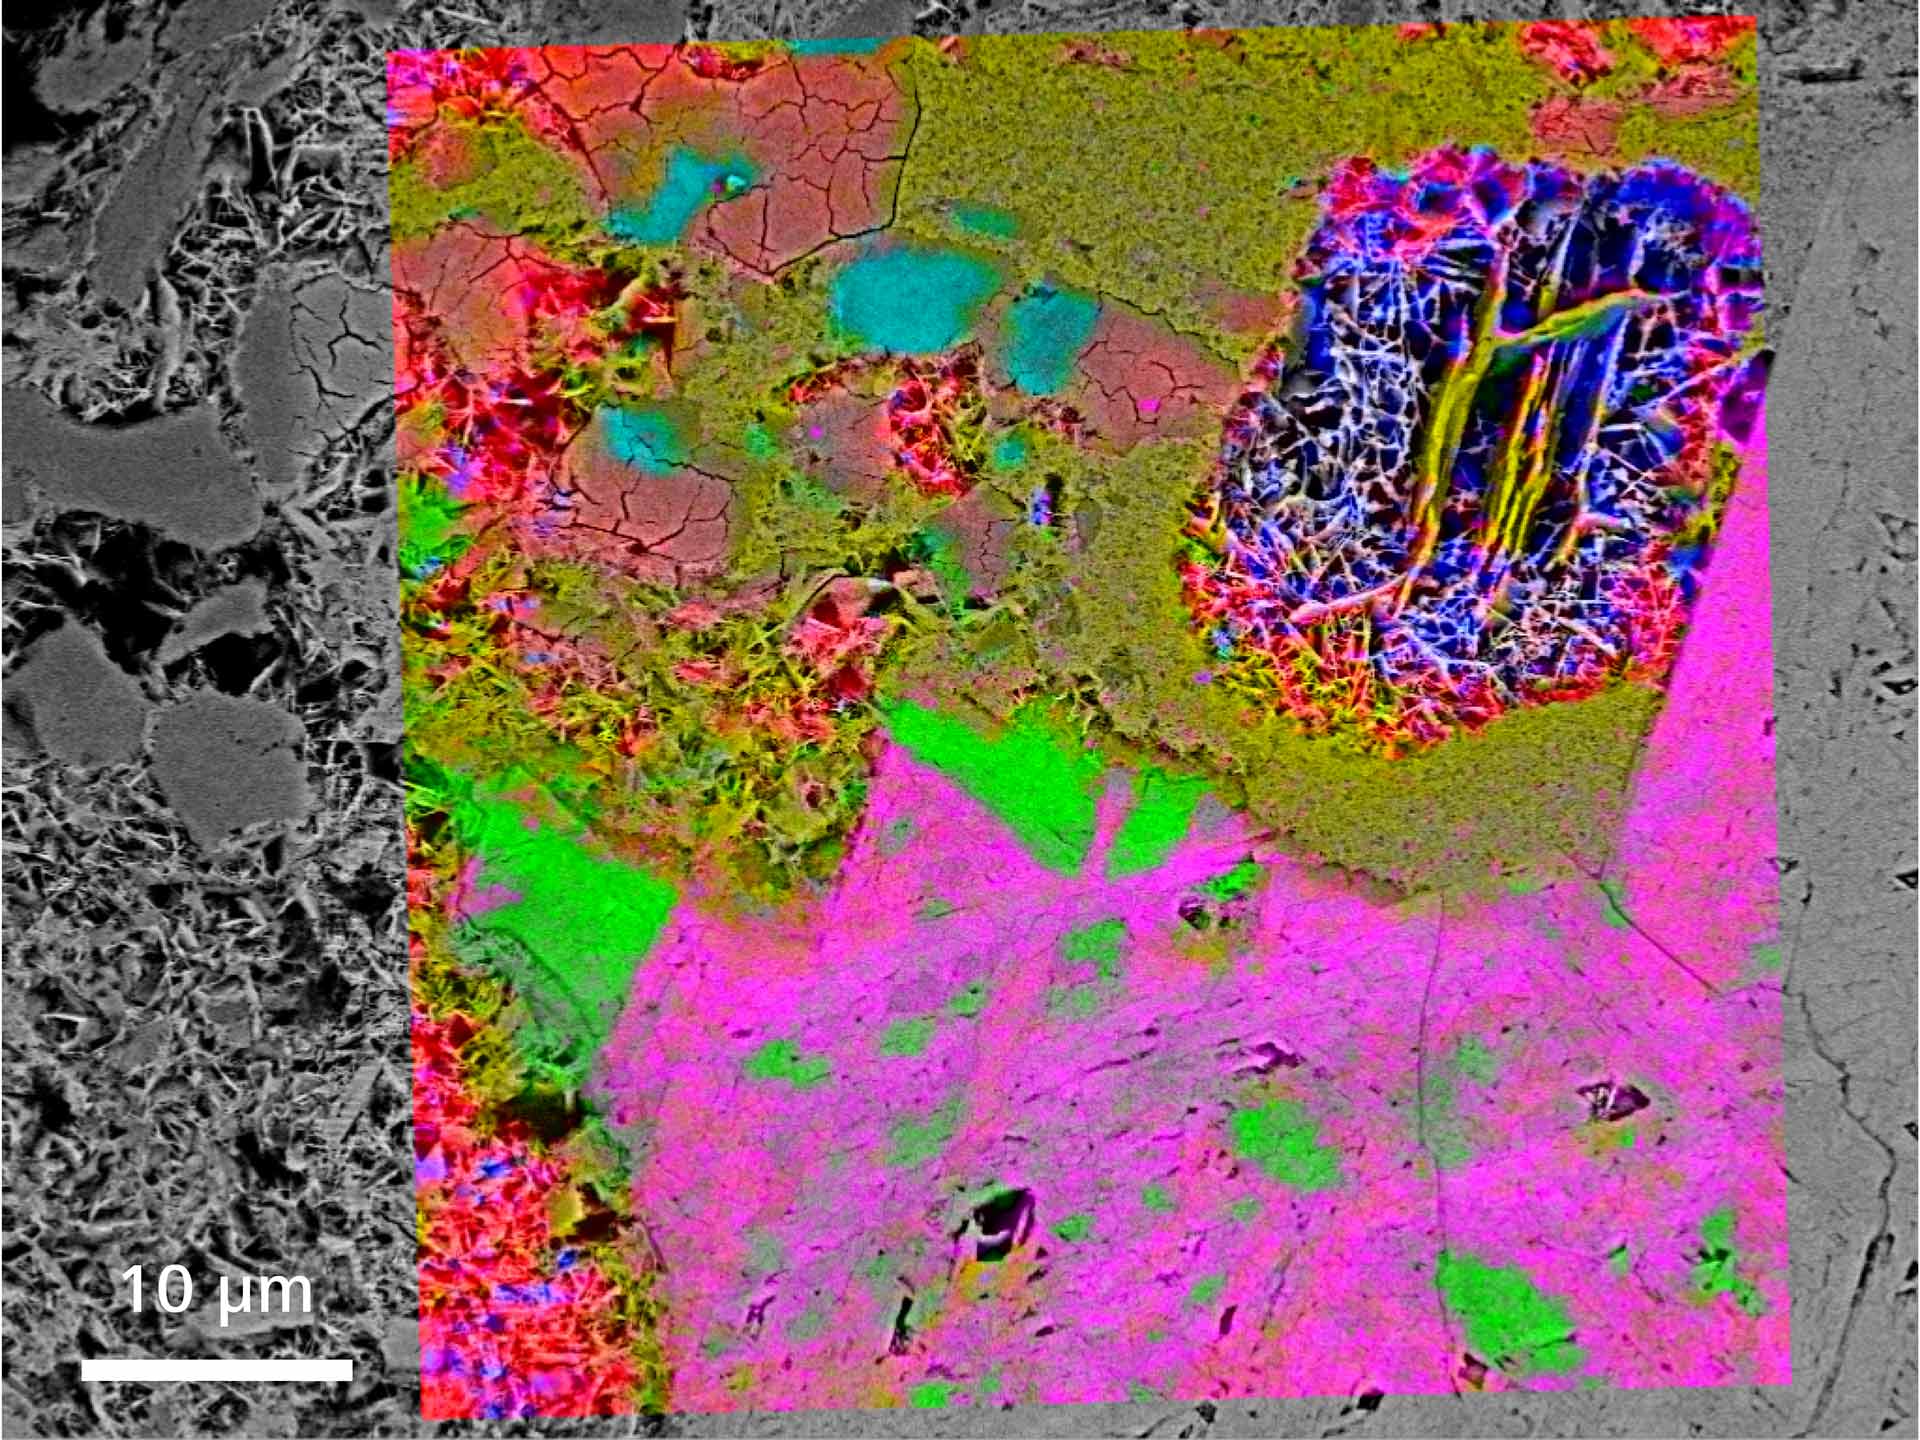 铁矿石矿物分析：铁矿石矿物的拉曼光谱分析，扫描电子显微镜图像和拉曼图叠加。（赤铁矿为红色、蓝色、绿色、橙色和粉红色；针铁矿为淡蓝色）。